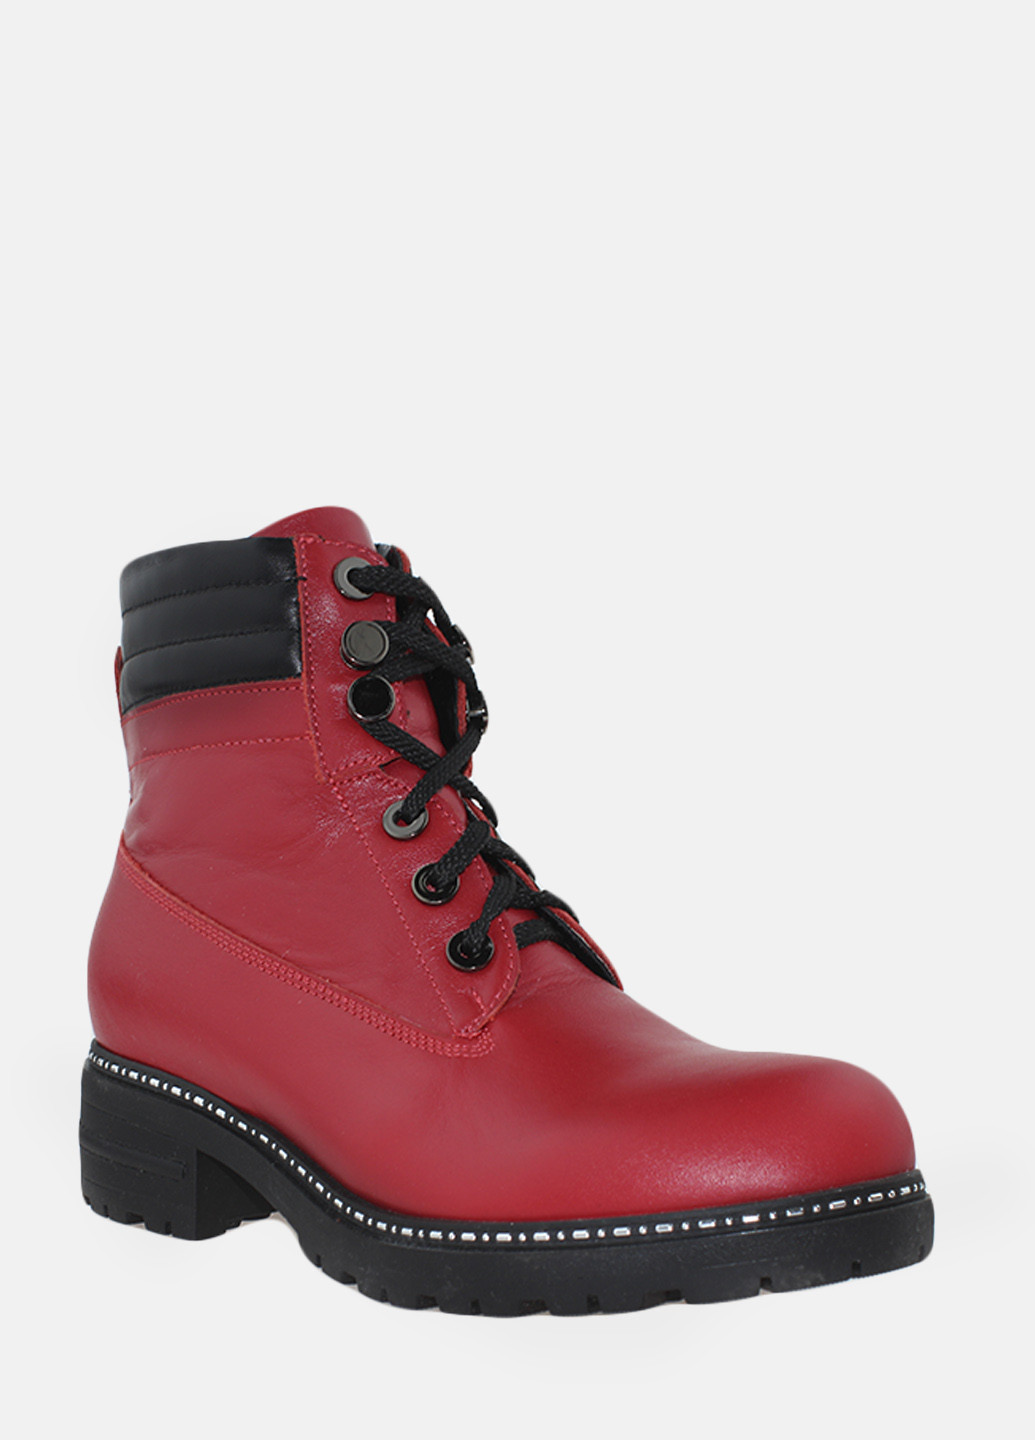 Зимние ботинки rp705-5 красный Passati